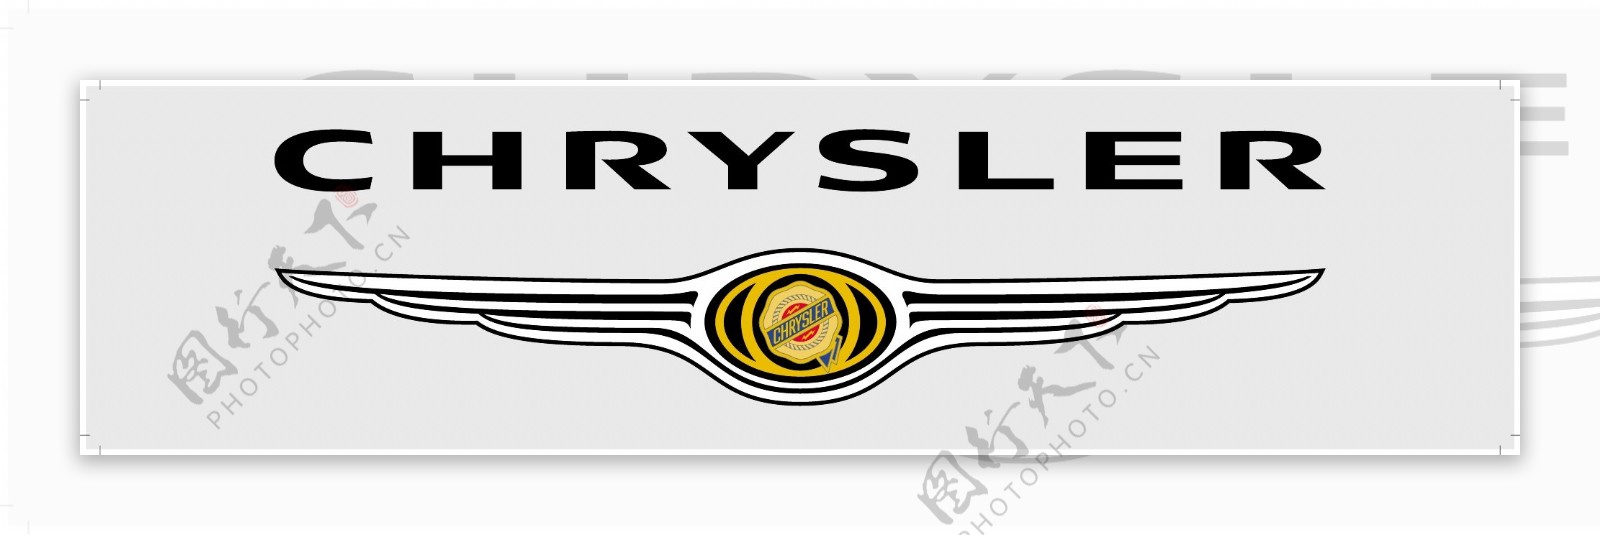 chrysler标志logo图片